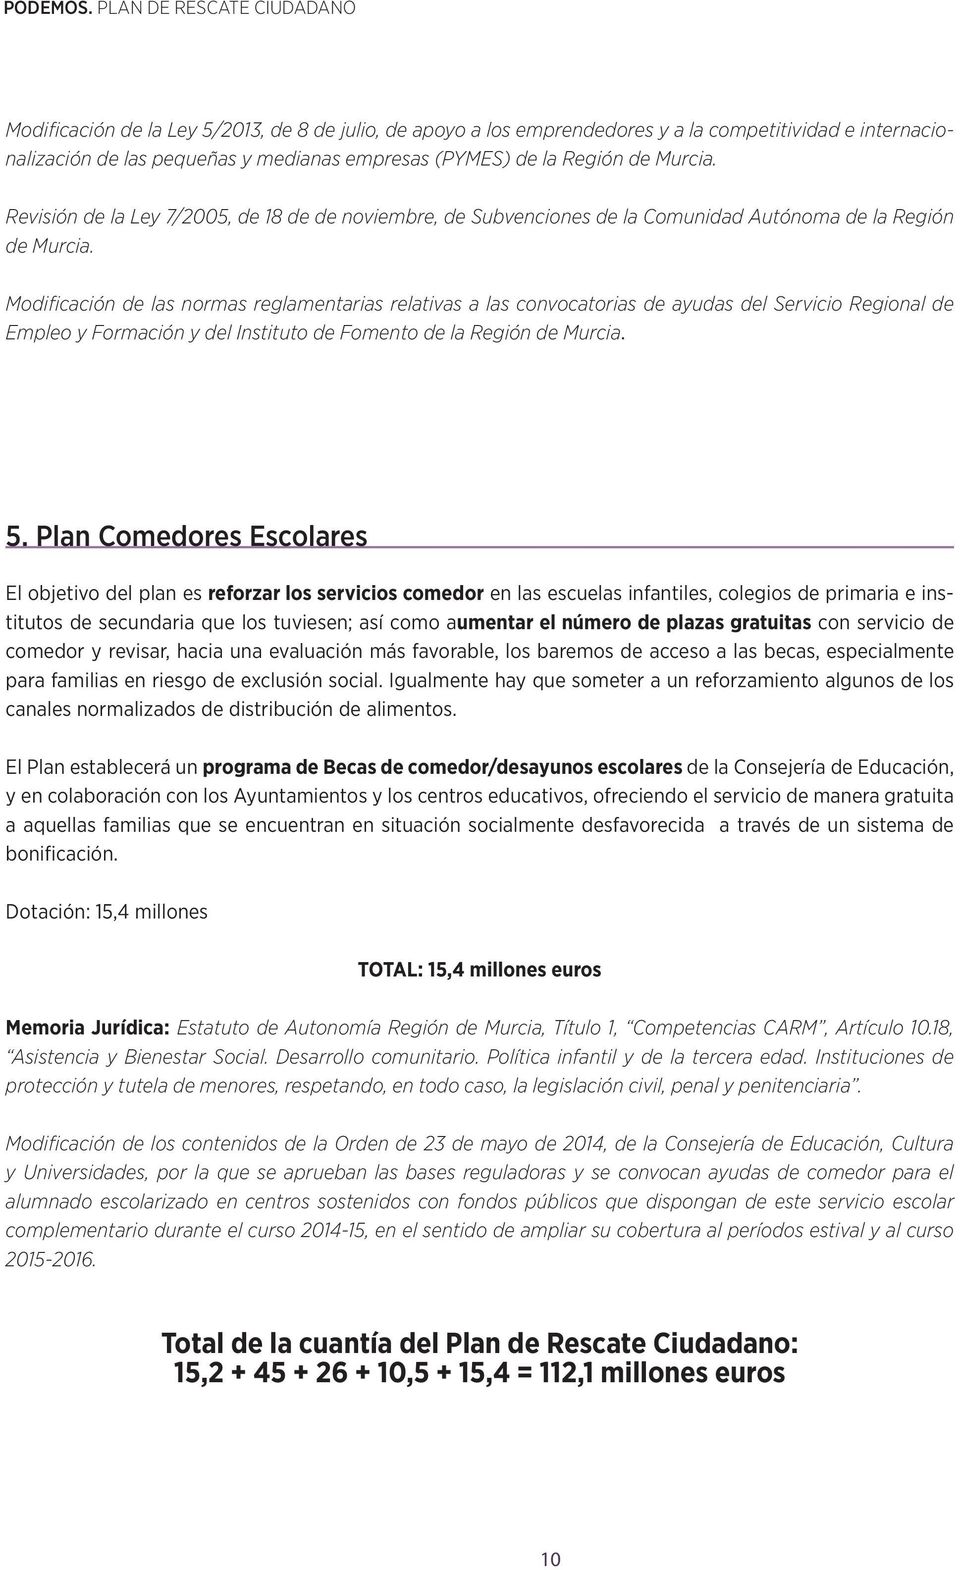 Modificación de las normas reglamentarias relativas a las convocatorias de ayudas del Servicio Regional de Empleo y Formación y del Instituto de Fomento de la Región de Murcia. 5.